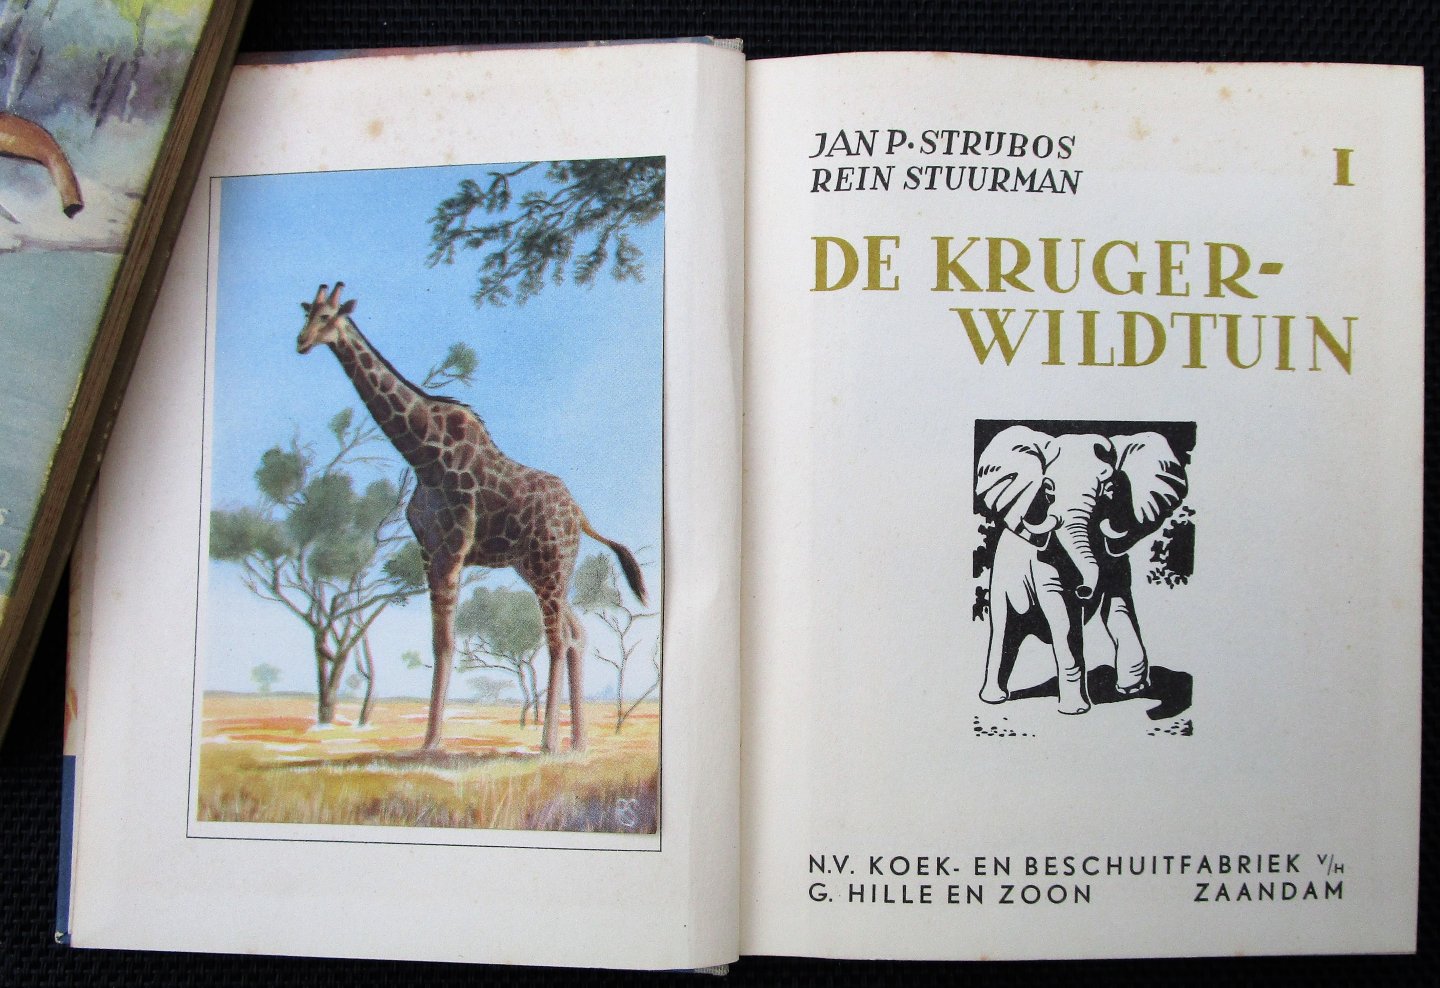 Strijbos, Jan P. - DE KRUGER WILDTUIN - Plaatjeszakboekjes deel 1 + deel 2. Compleet